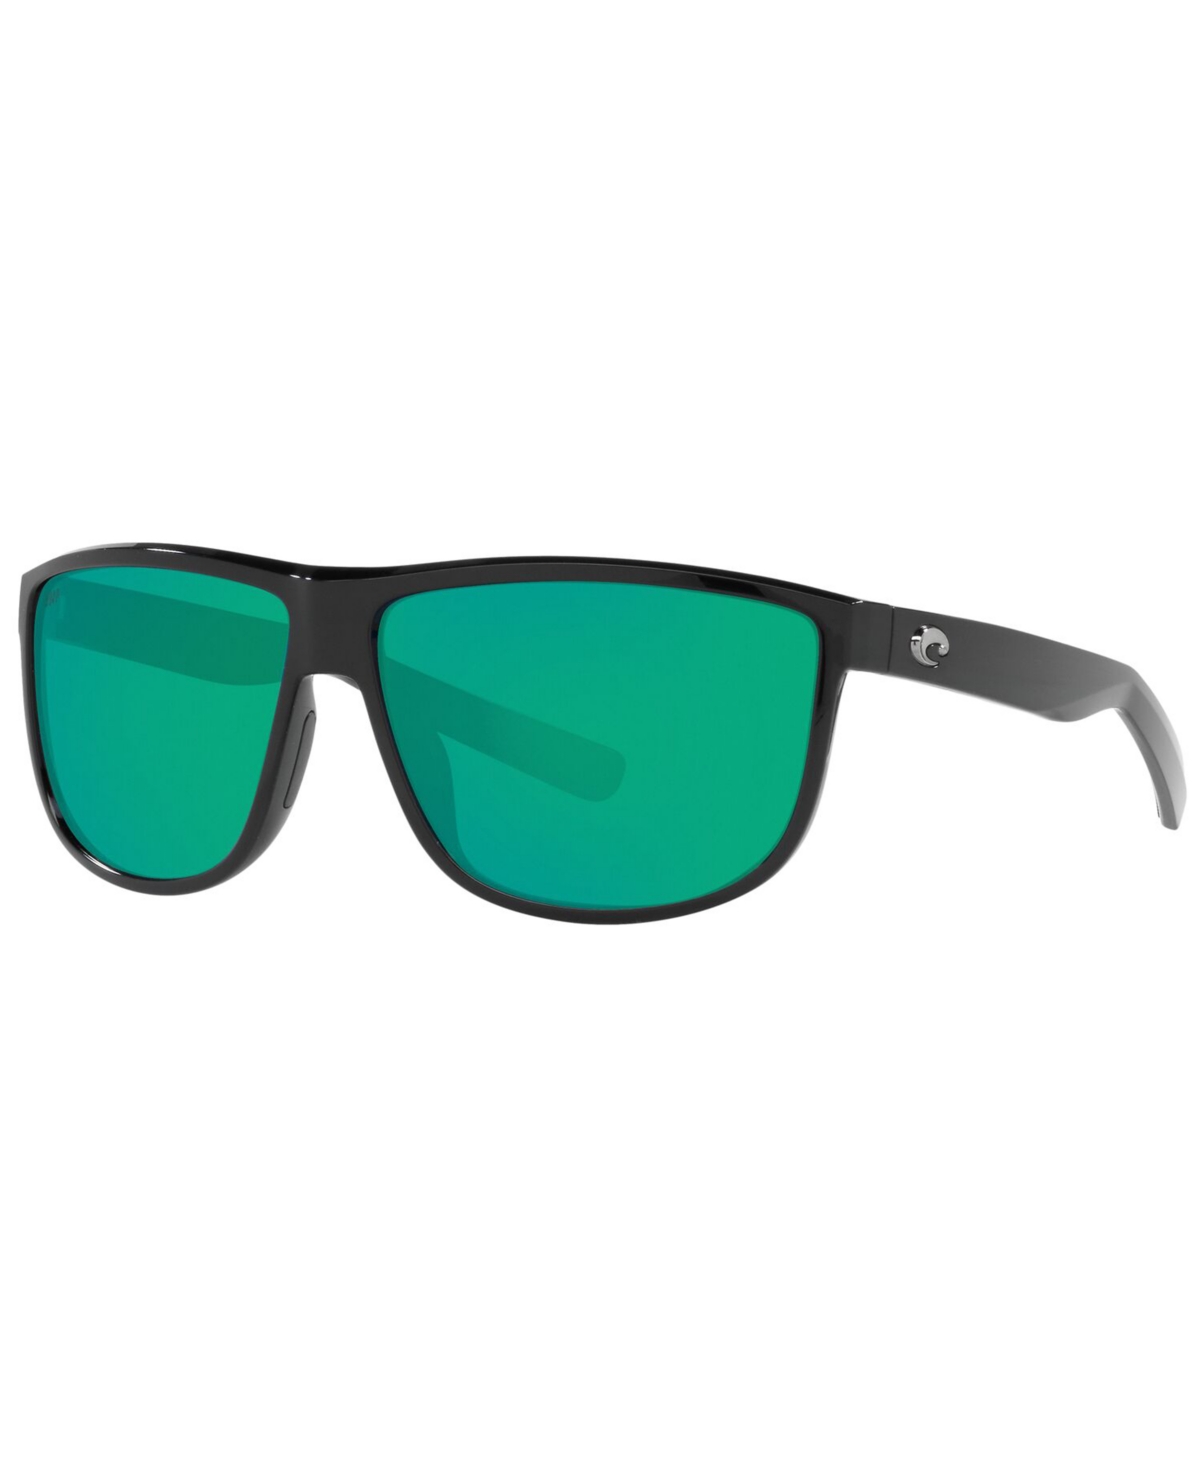 Costa Del Mar Rincondo Polarized Sunglasses, 6s9010 61 In Shiny Black,green Mirror P